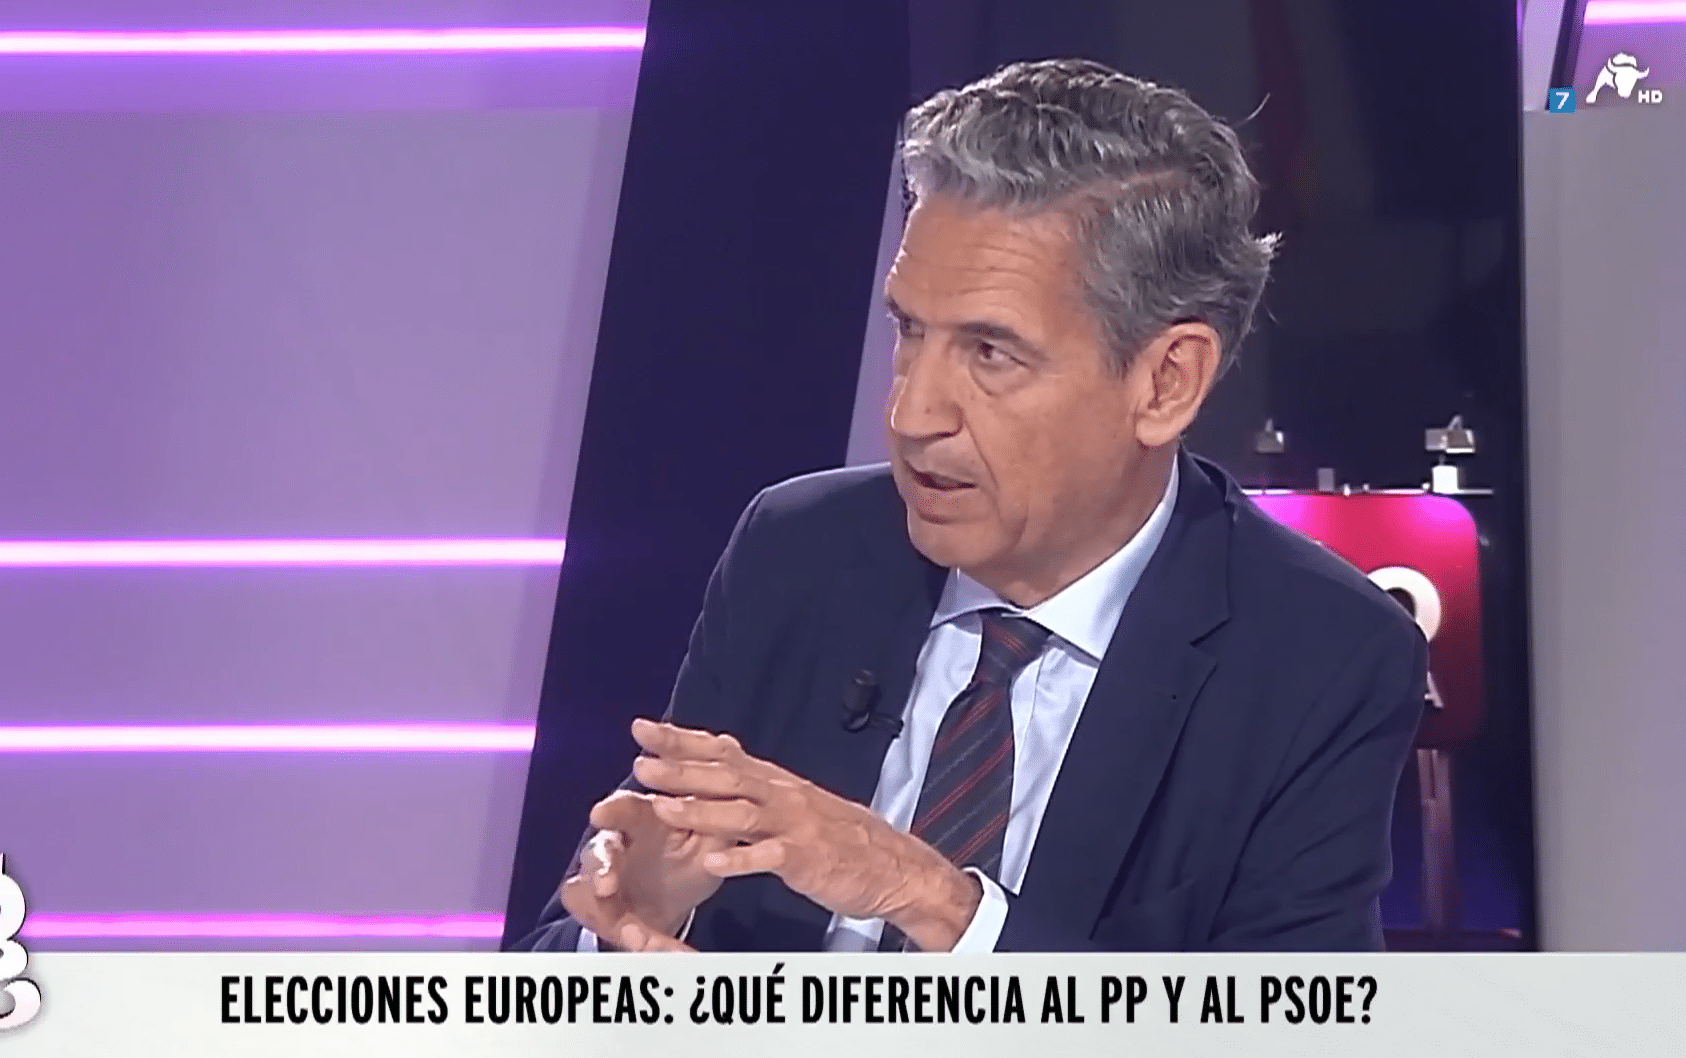  La complicidad de PP y PSOE en Europa: hacer negocios para repartirse fondos europeos